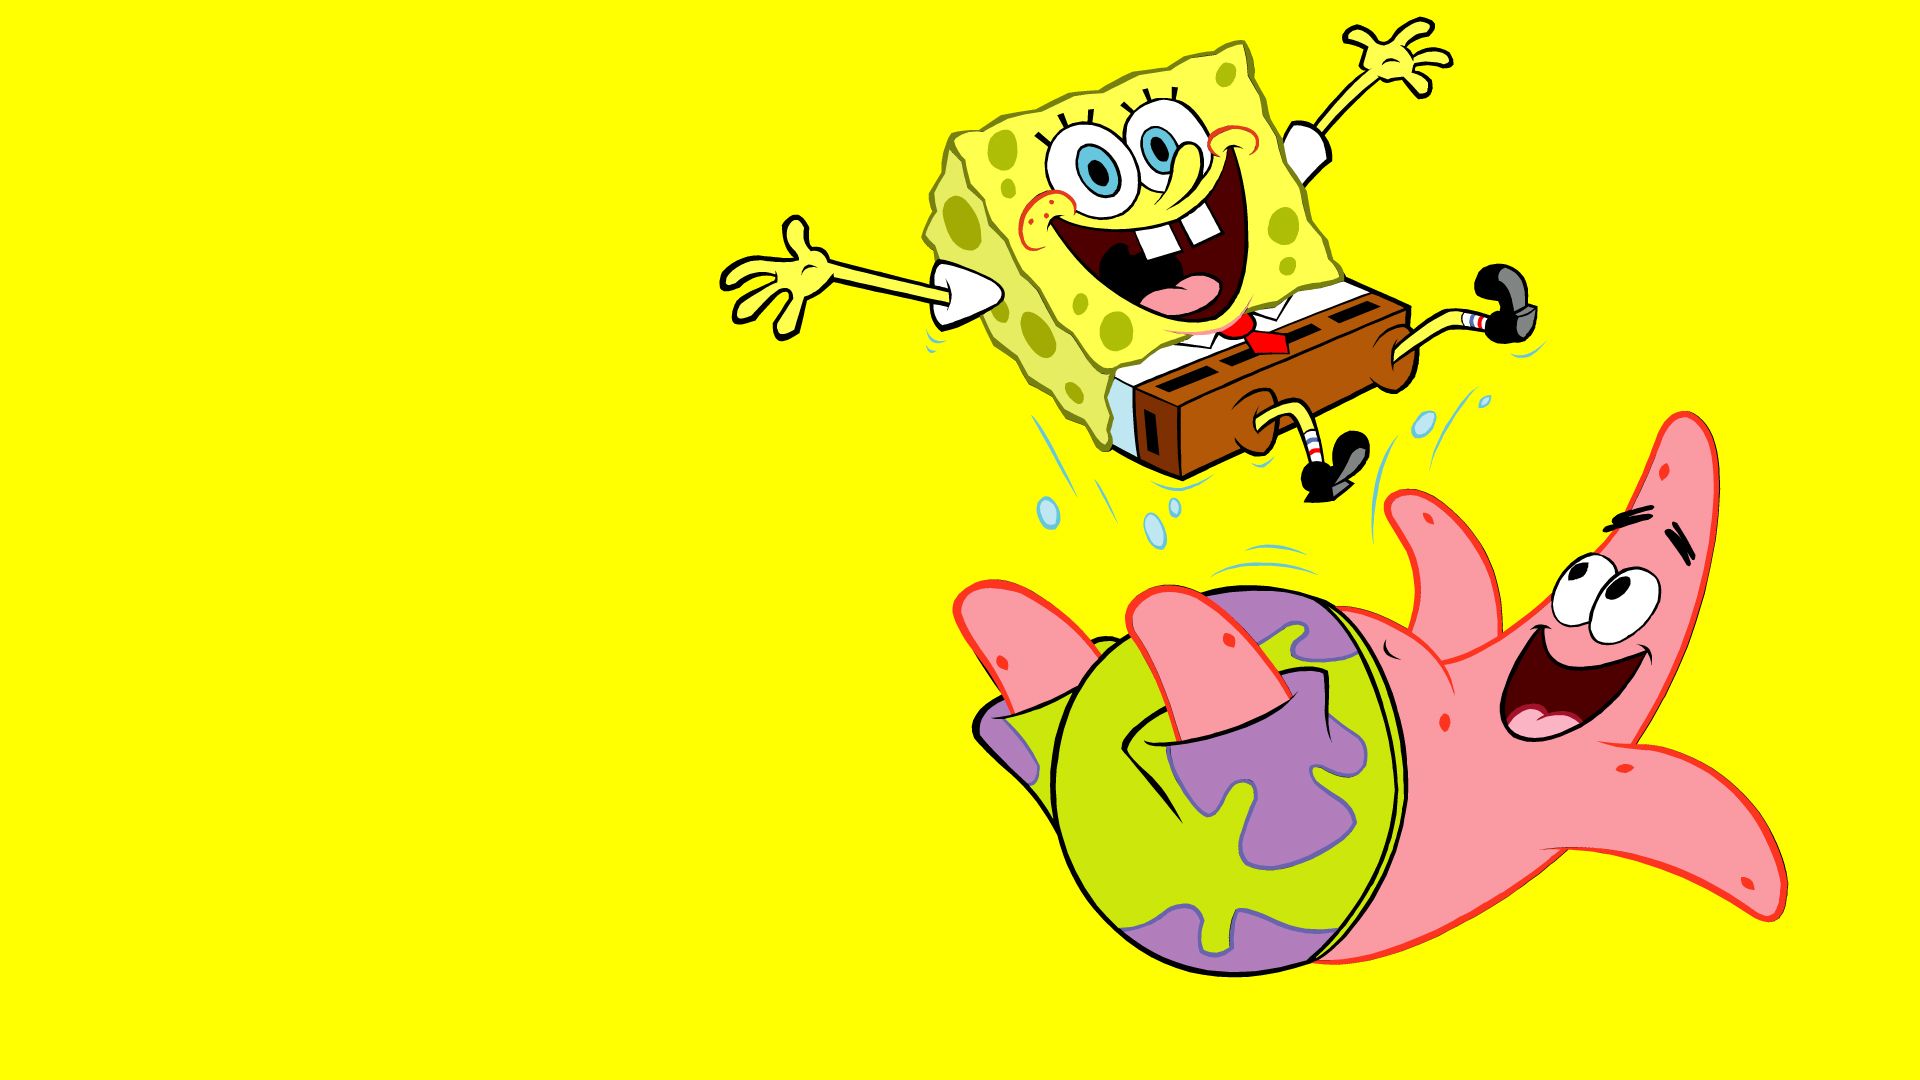 Spongebob Squarepants HD Wallpaper for desktop download